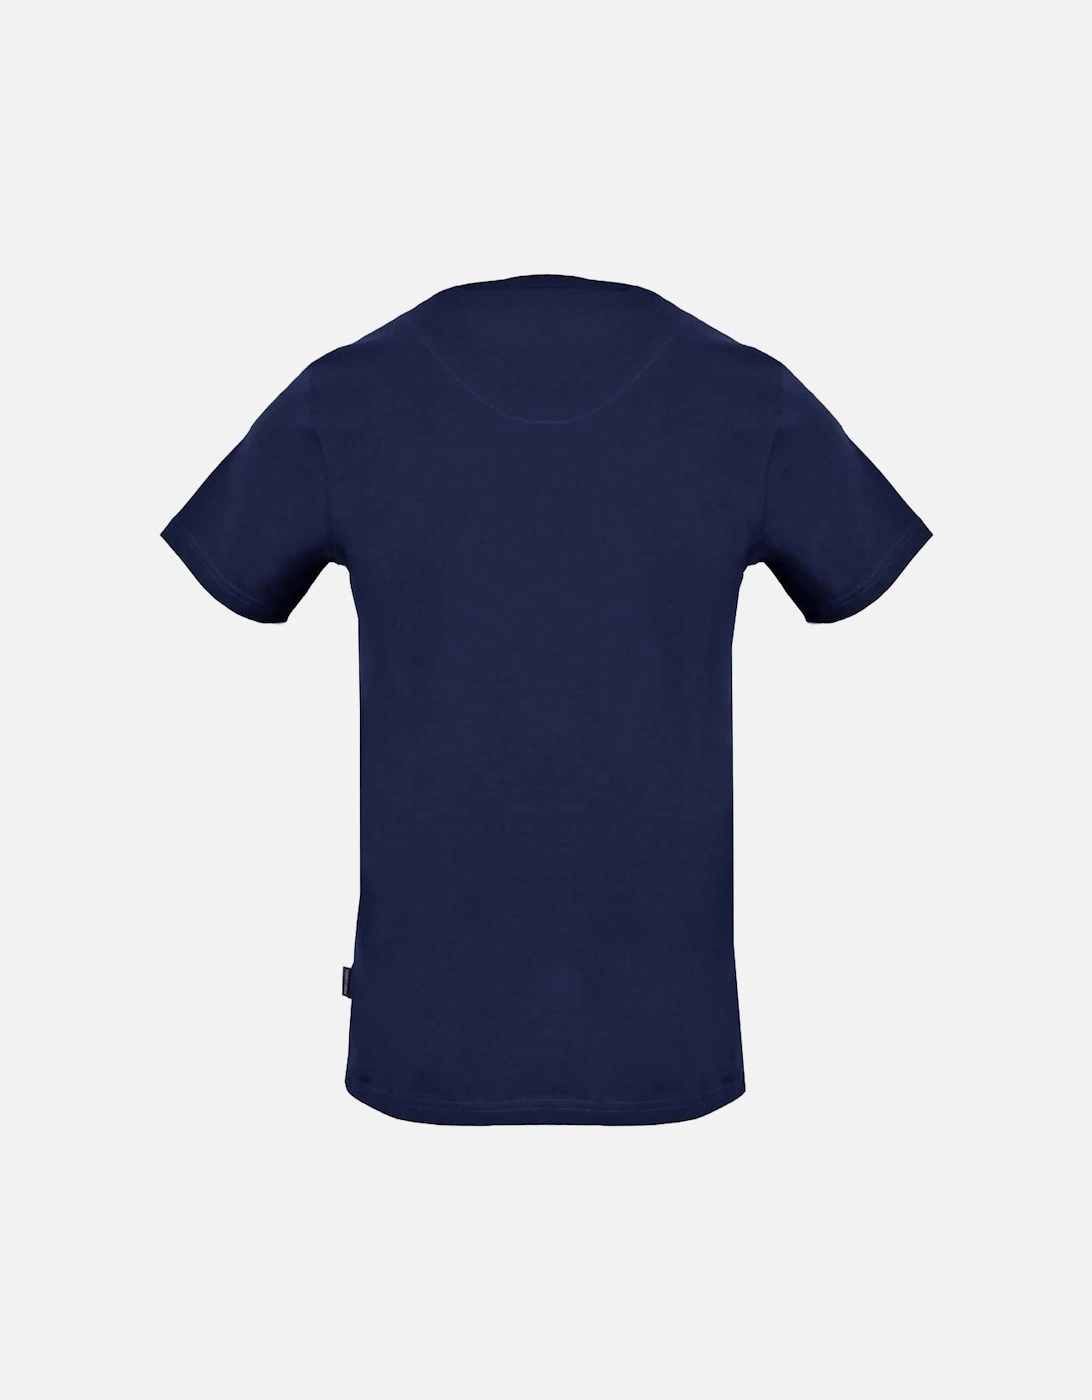 Check Aldis Crest Navy Blue T-Shirt